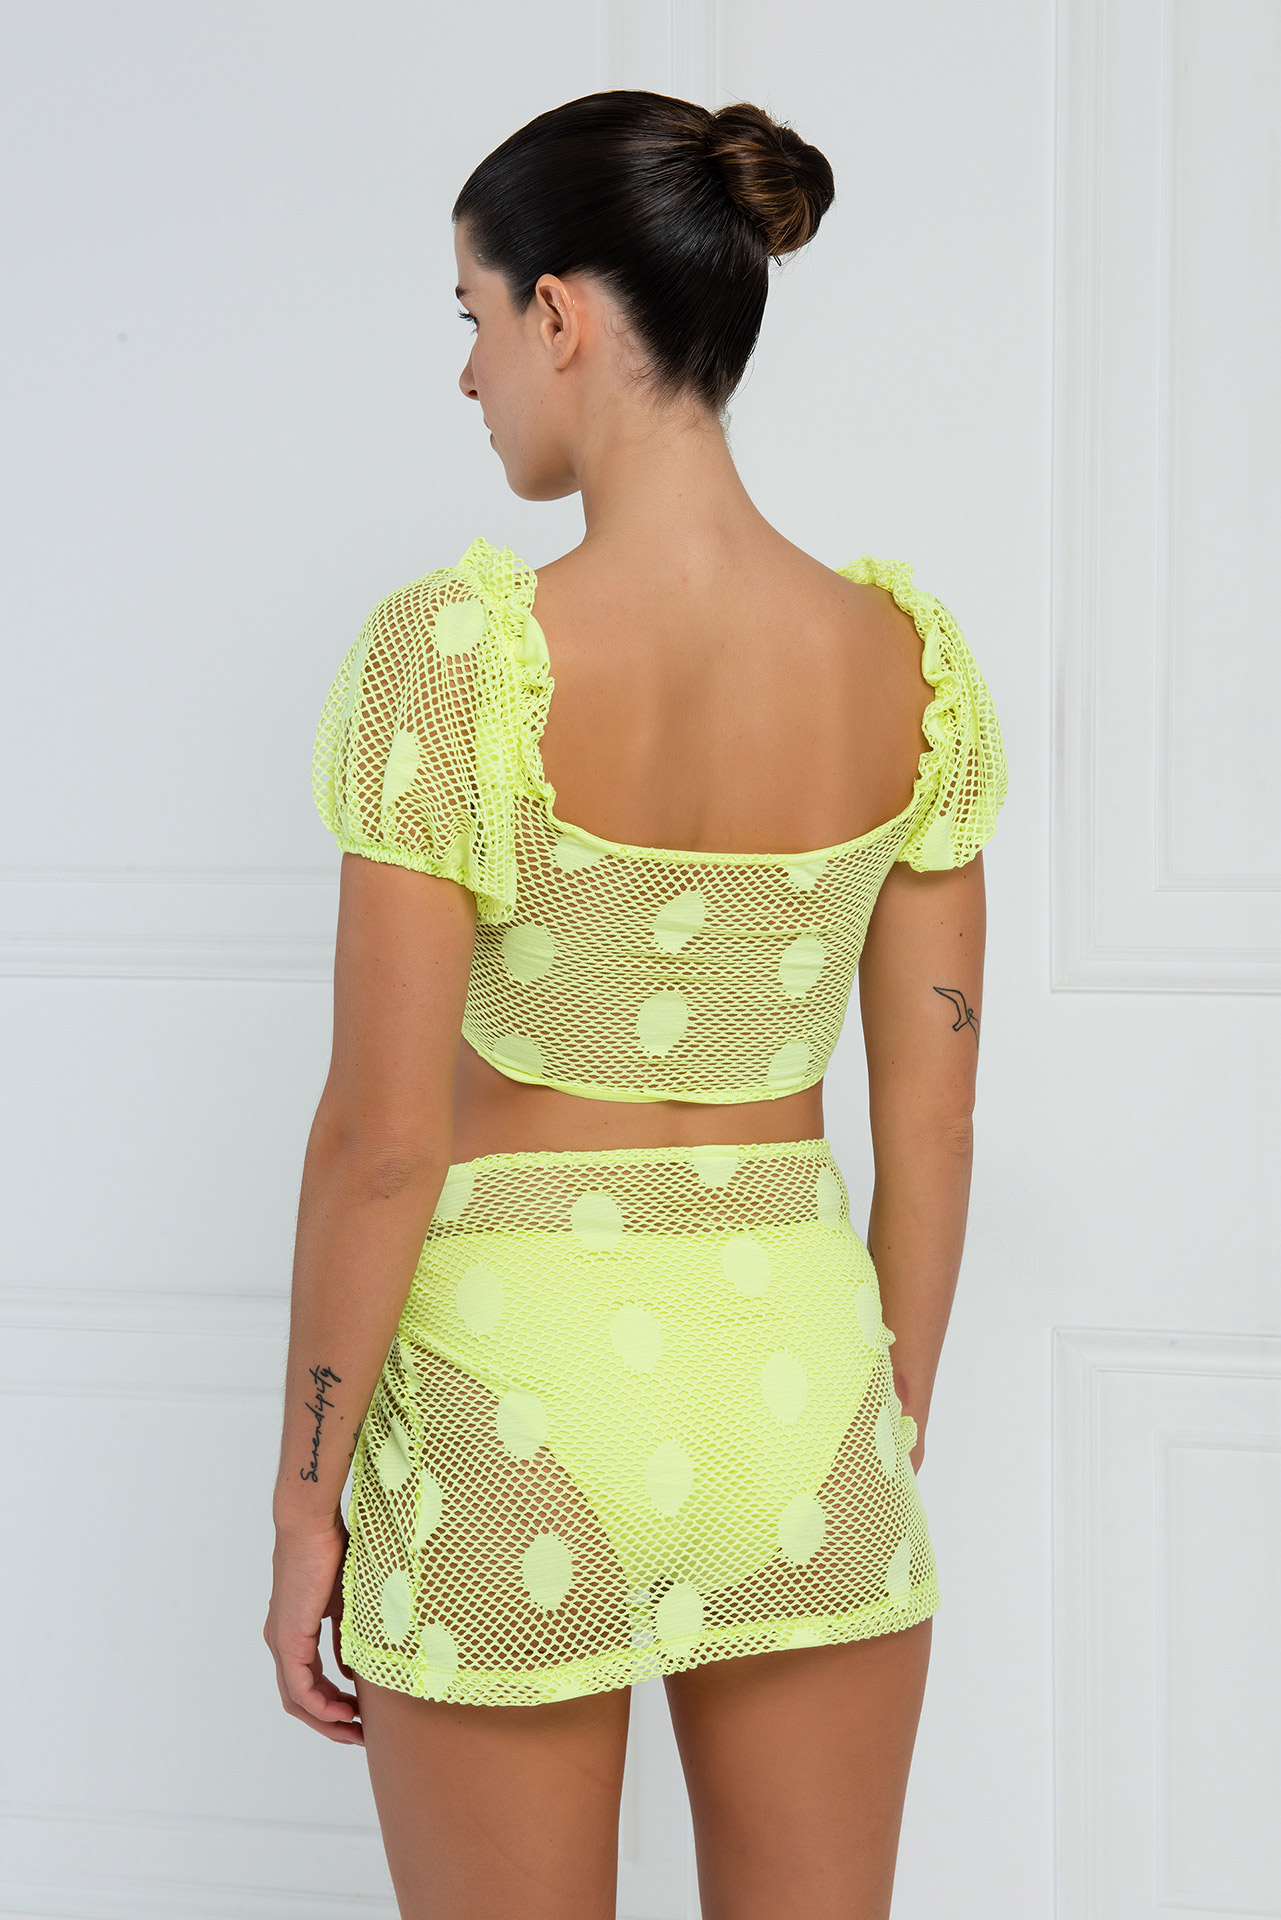 Sheer Neon Yellow Crop Top & Skirt Set